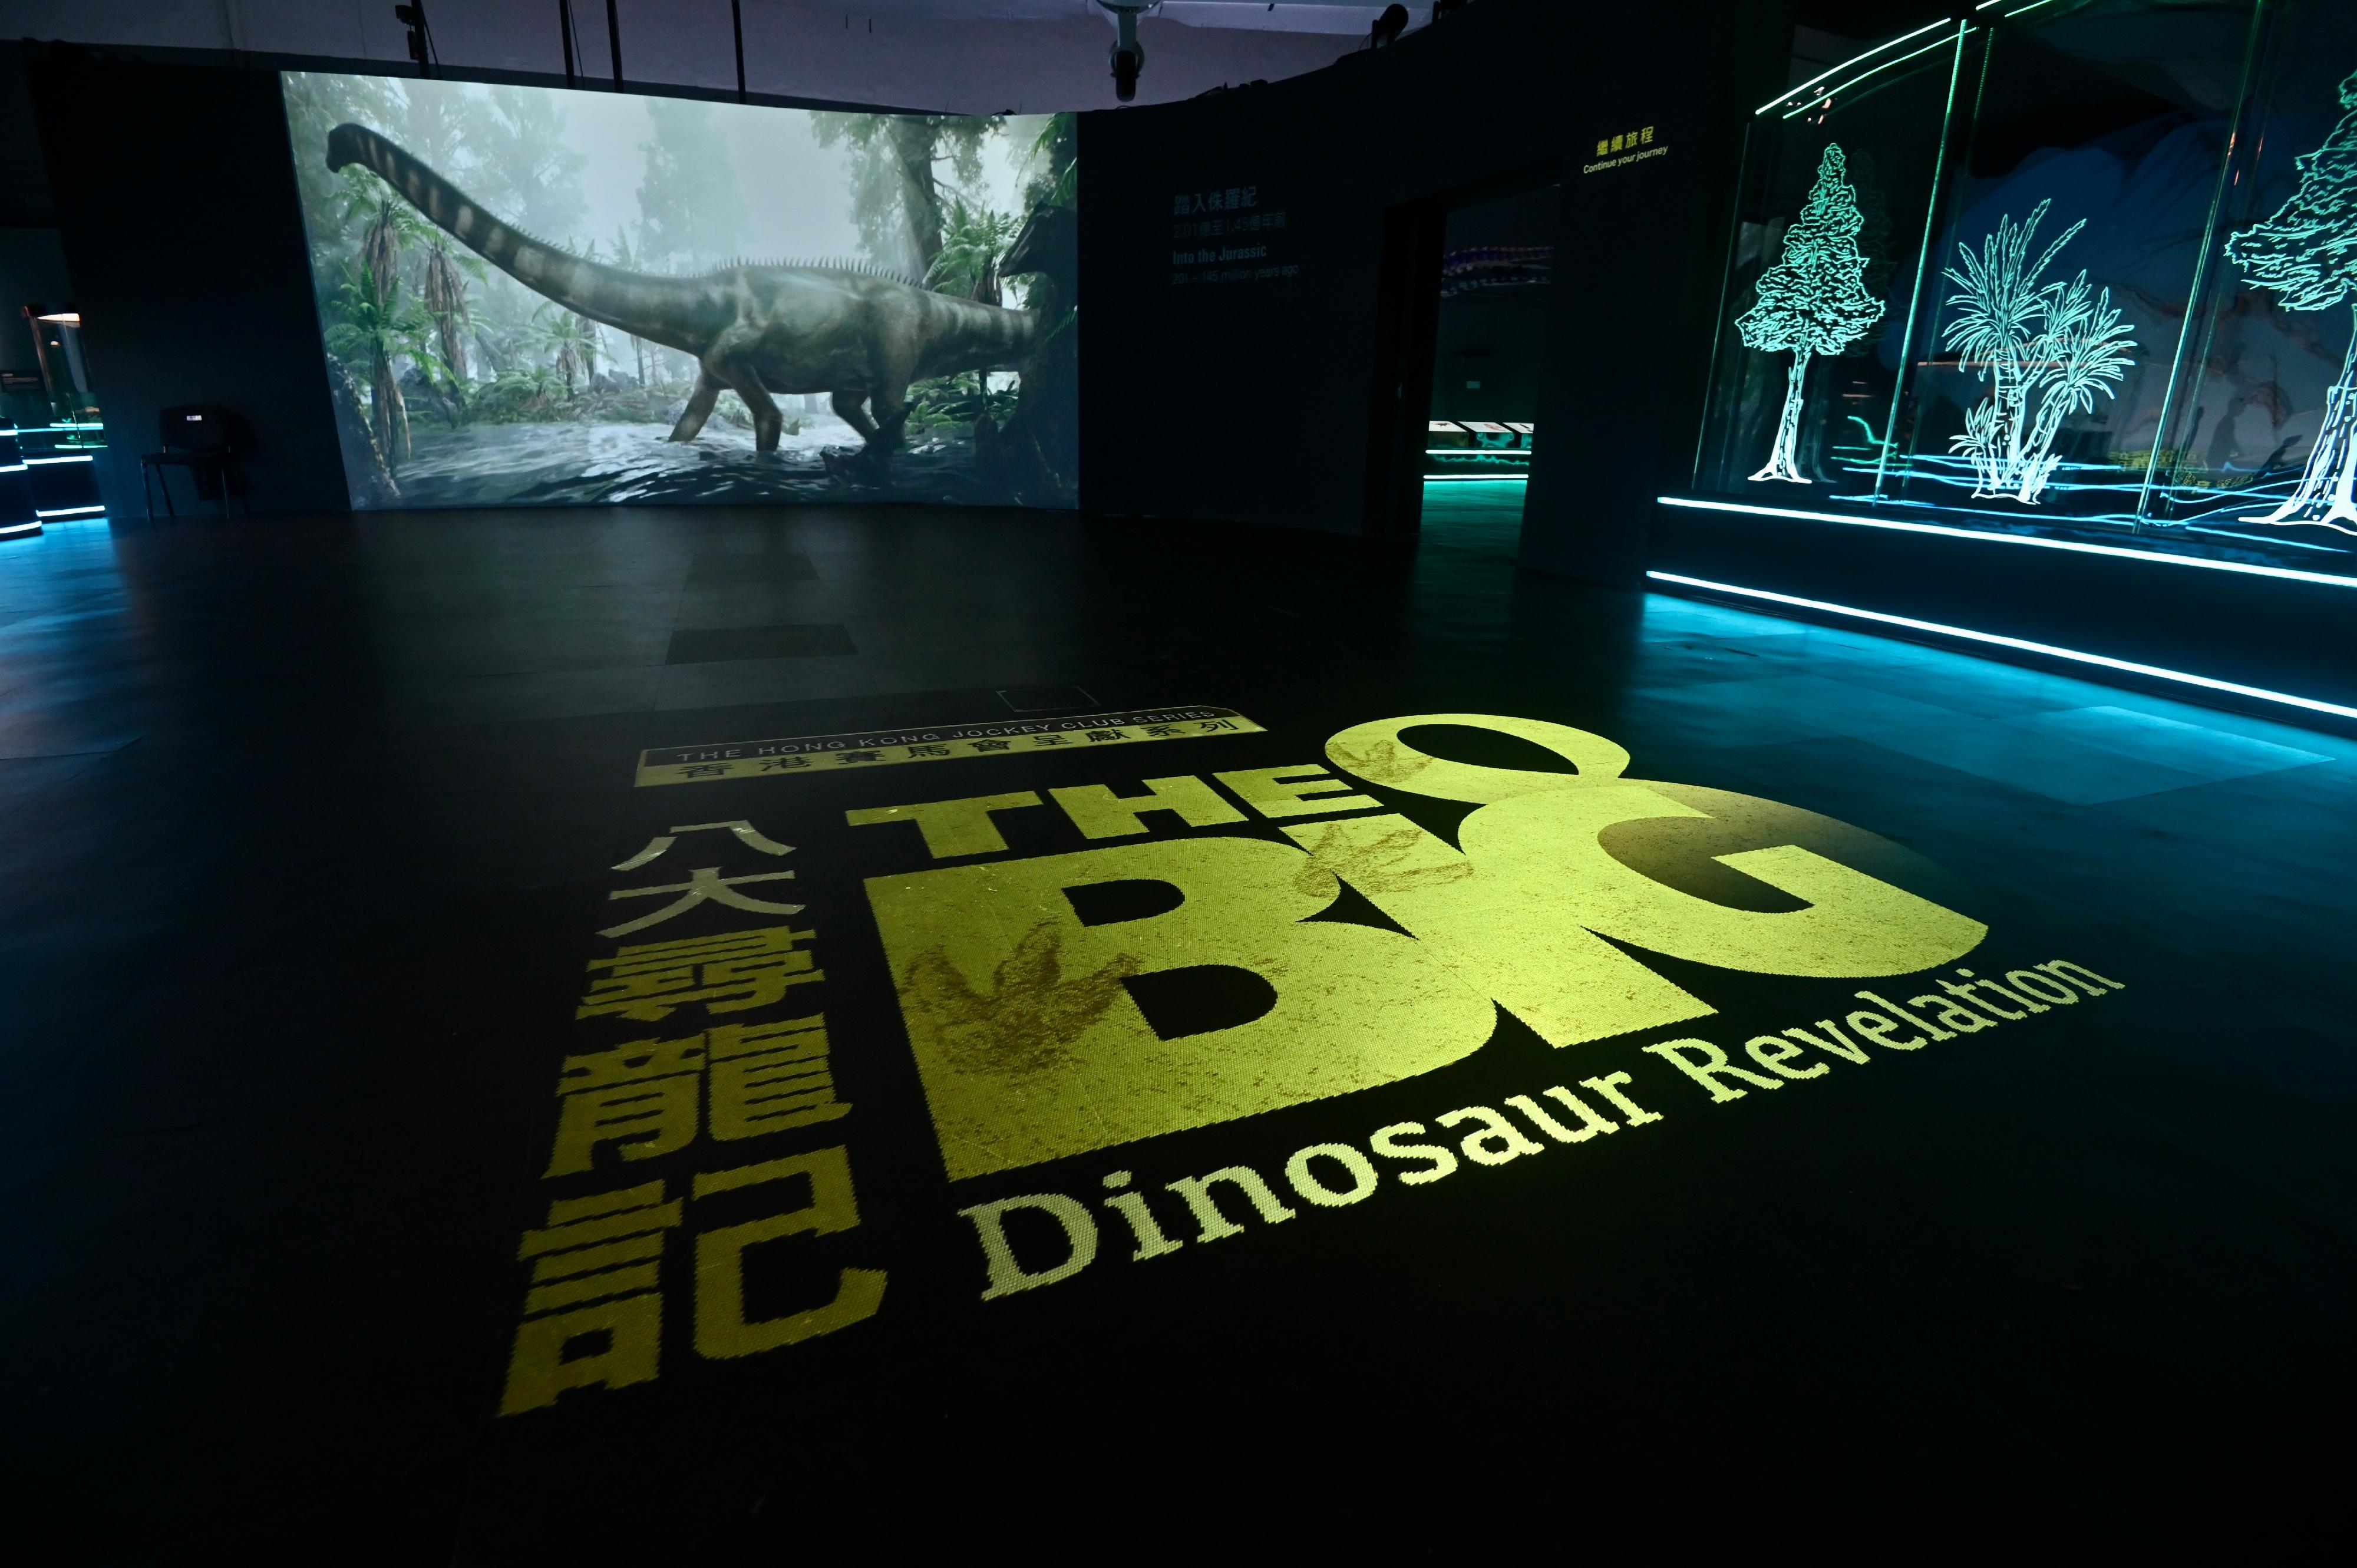 香港科學館舉辦的免費大型恐龍展覽「香港賽馬會呈獻系列：八大‧尋龍記」開展至今深受市民歡迎。香港科學館將延長展期至明年二月二十二日。